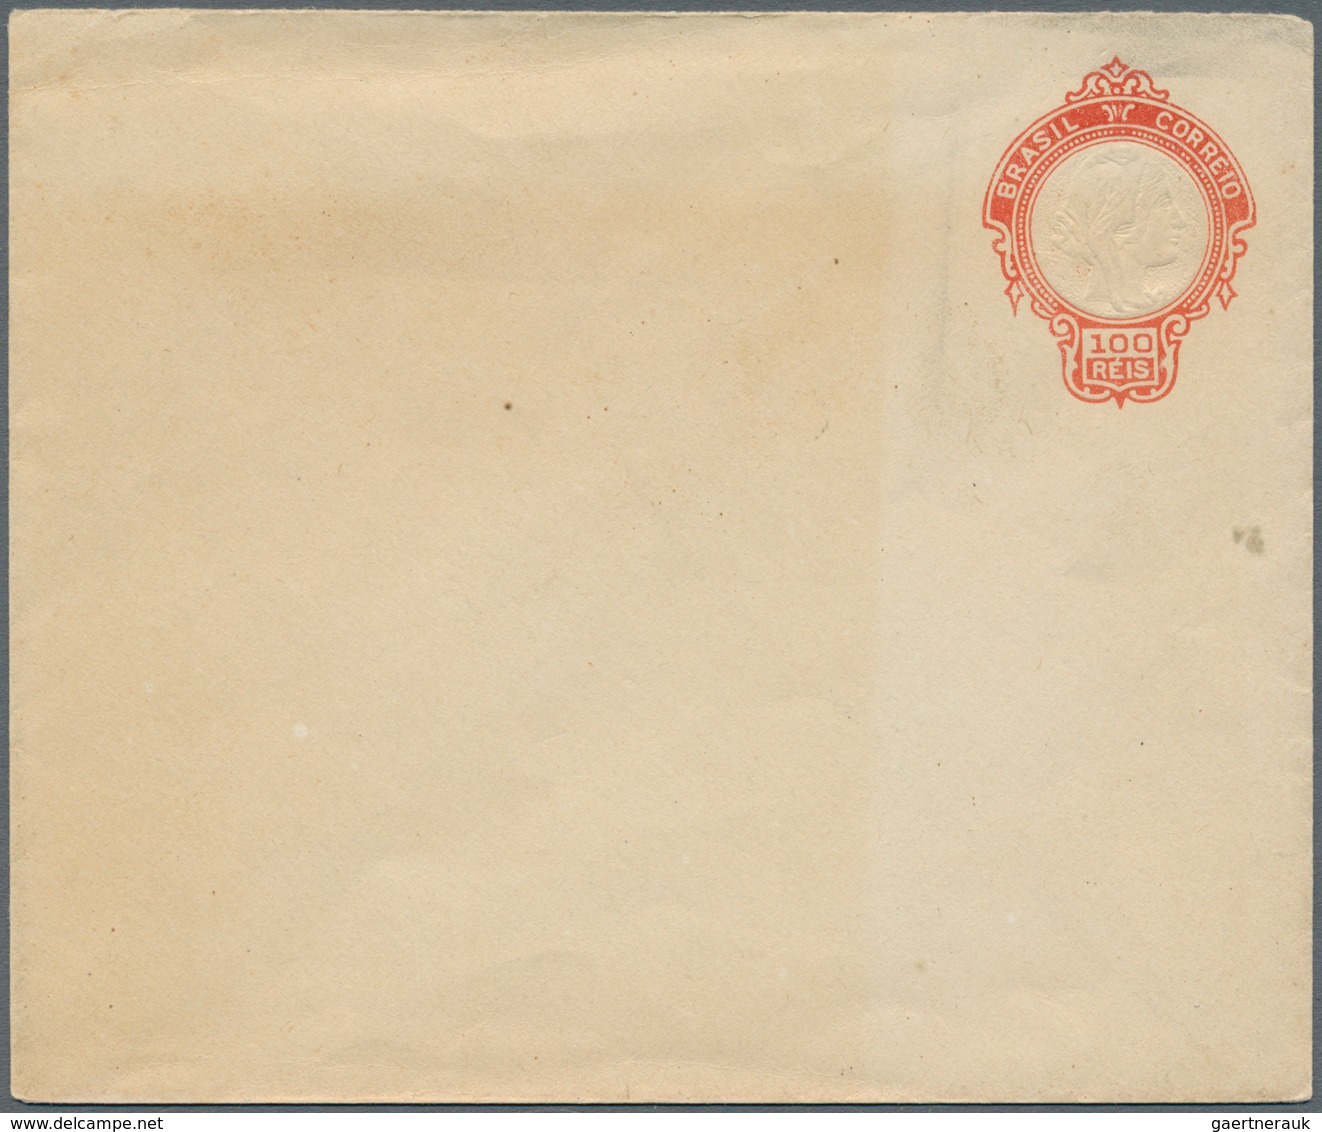 Brasilien - Ganzsachen: 1920: 100 R, Postal Stationery Envelope, Type II Without Return Address Line - Ganzsachen